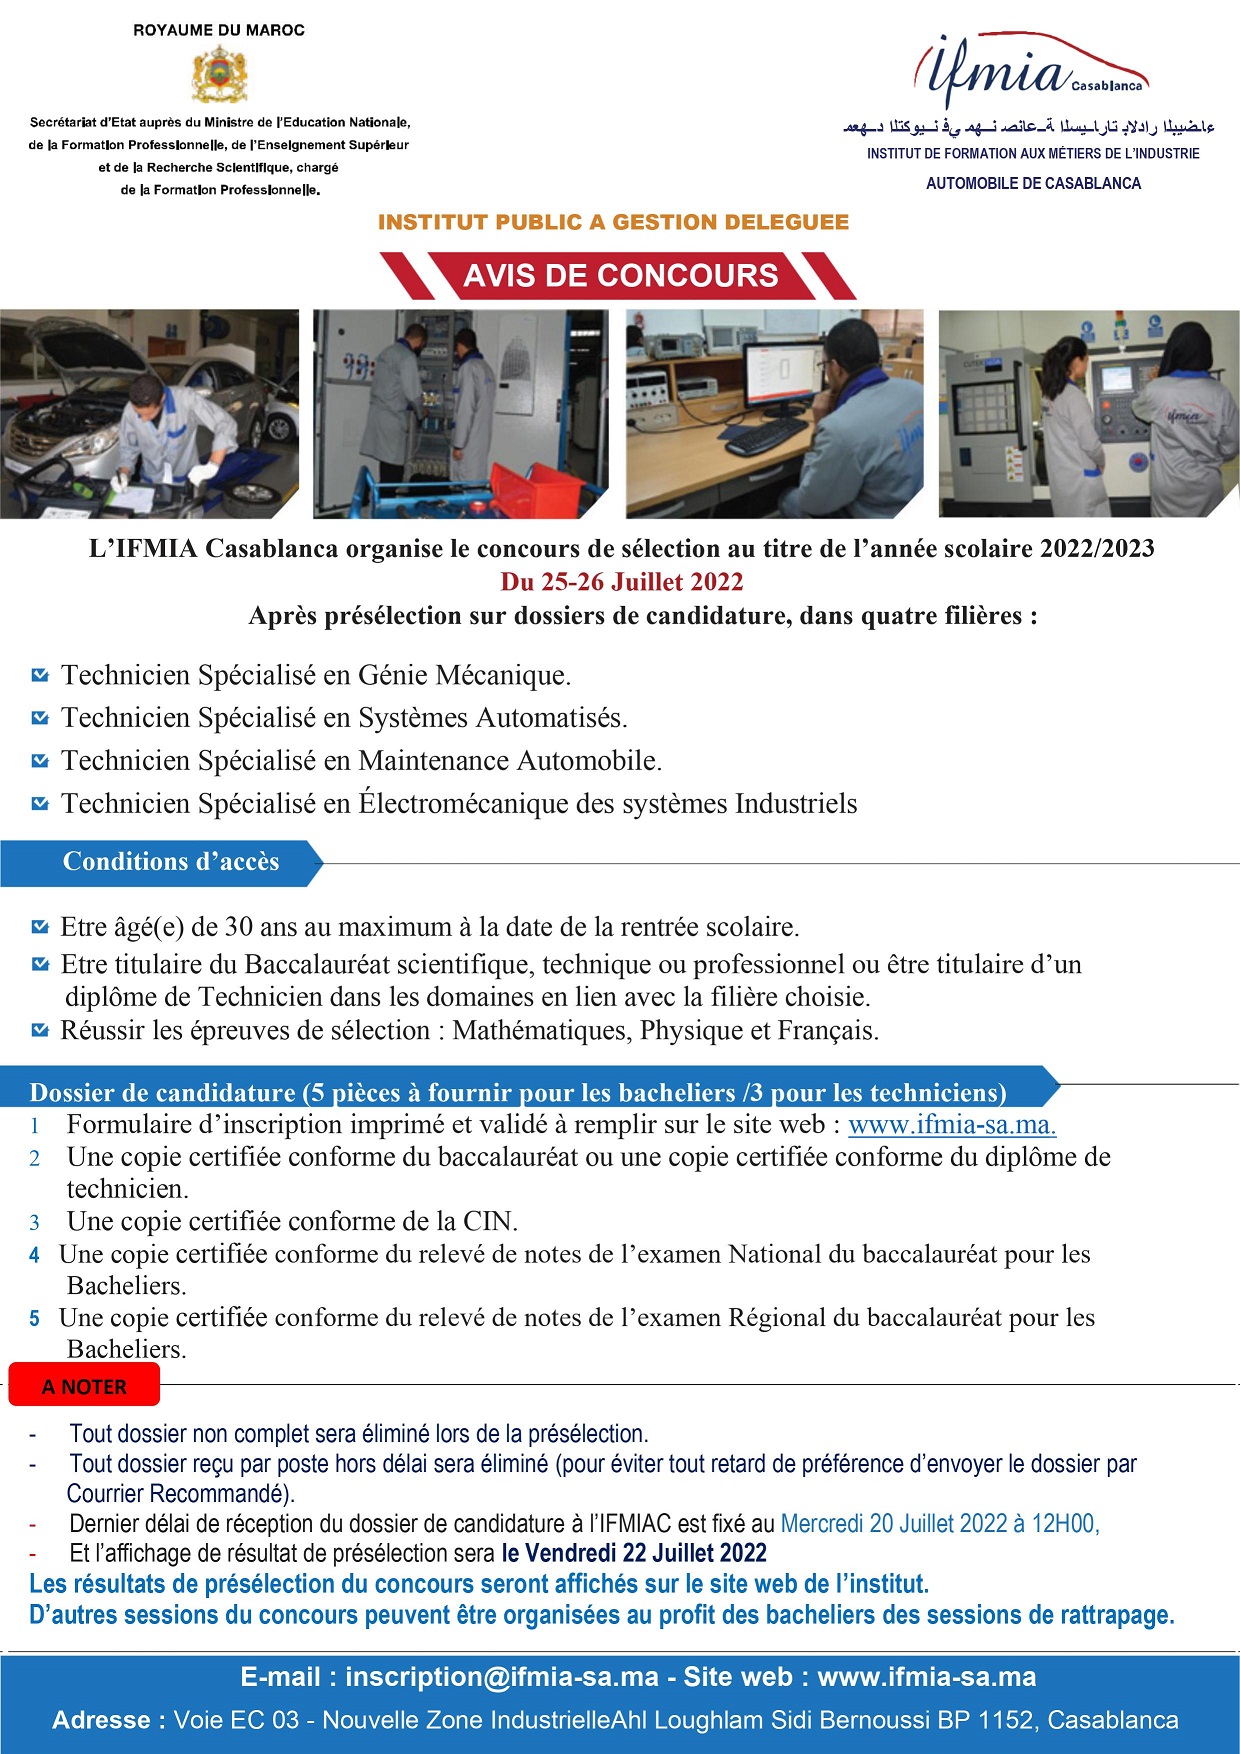 Concours TS de l'Institut de Formation aux Métiers de l’Industrie Automobile IFMIA CASABLANCA 2022